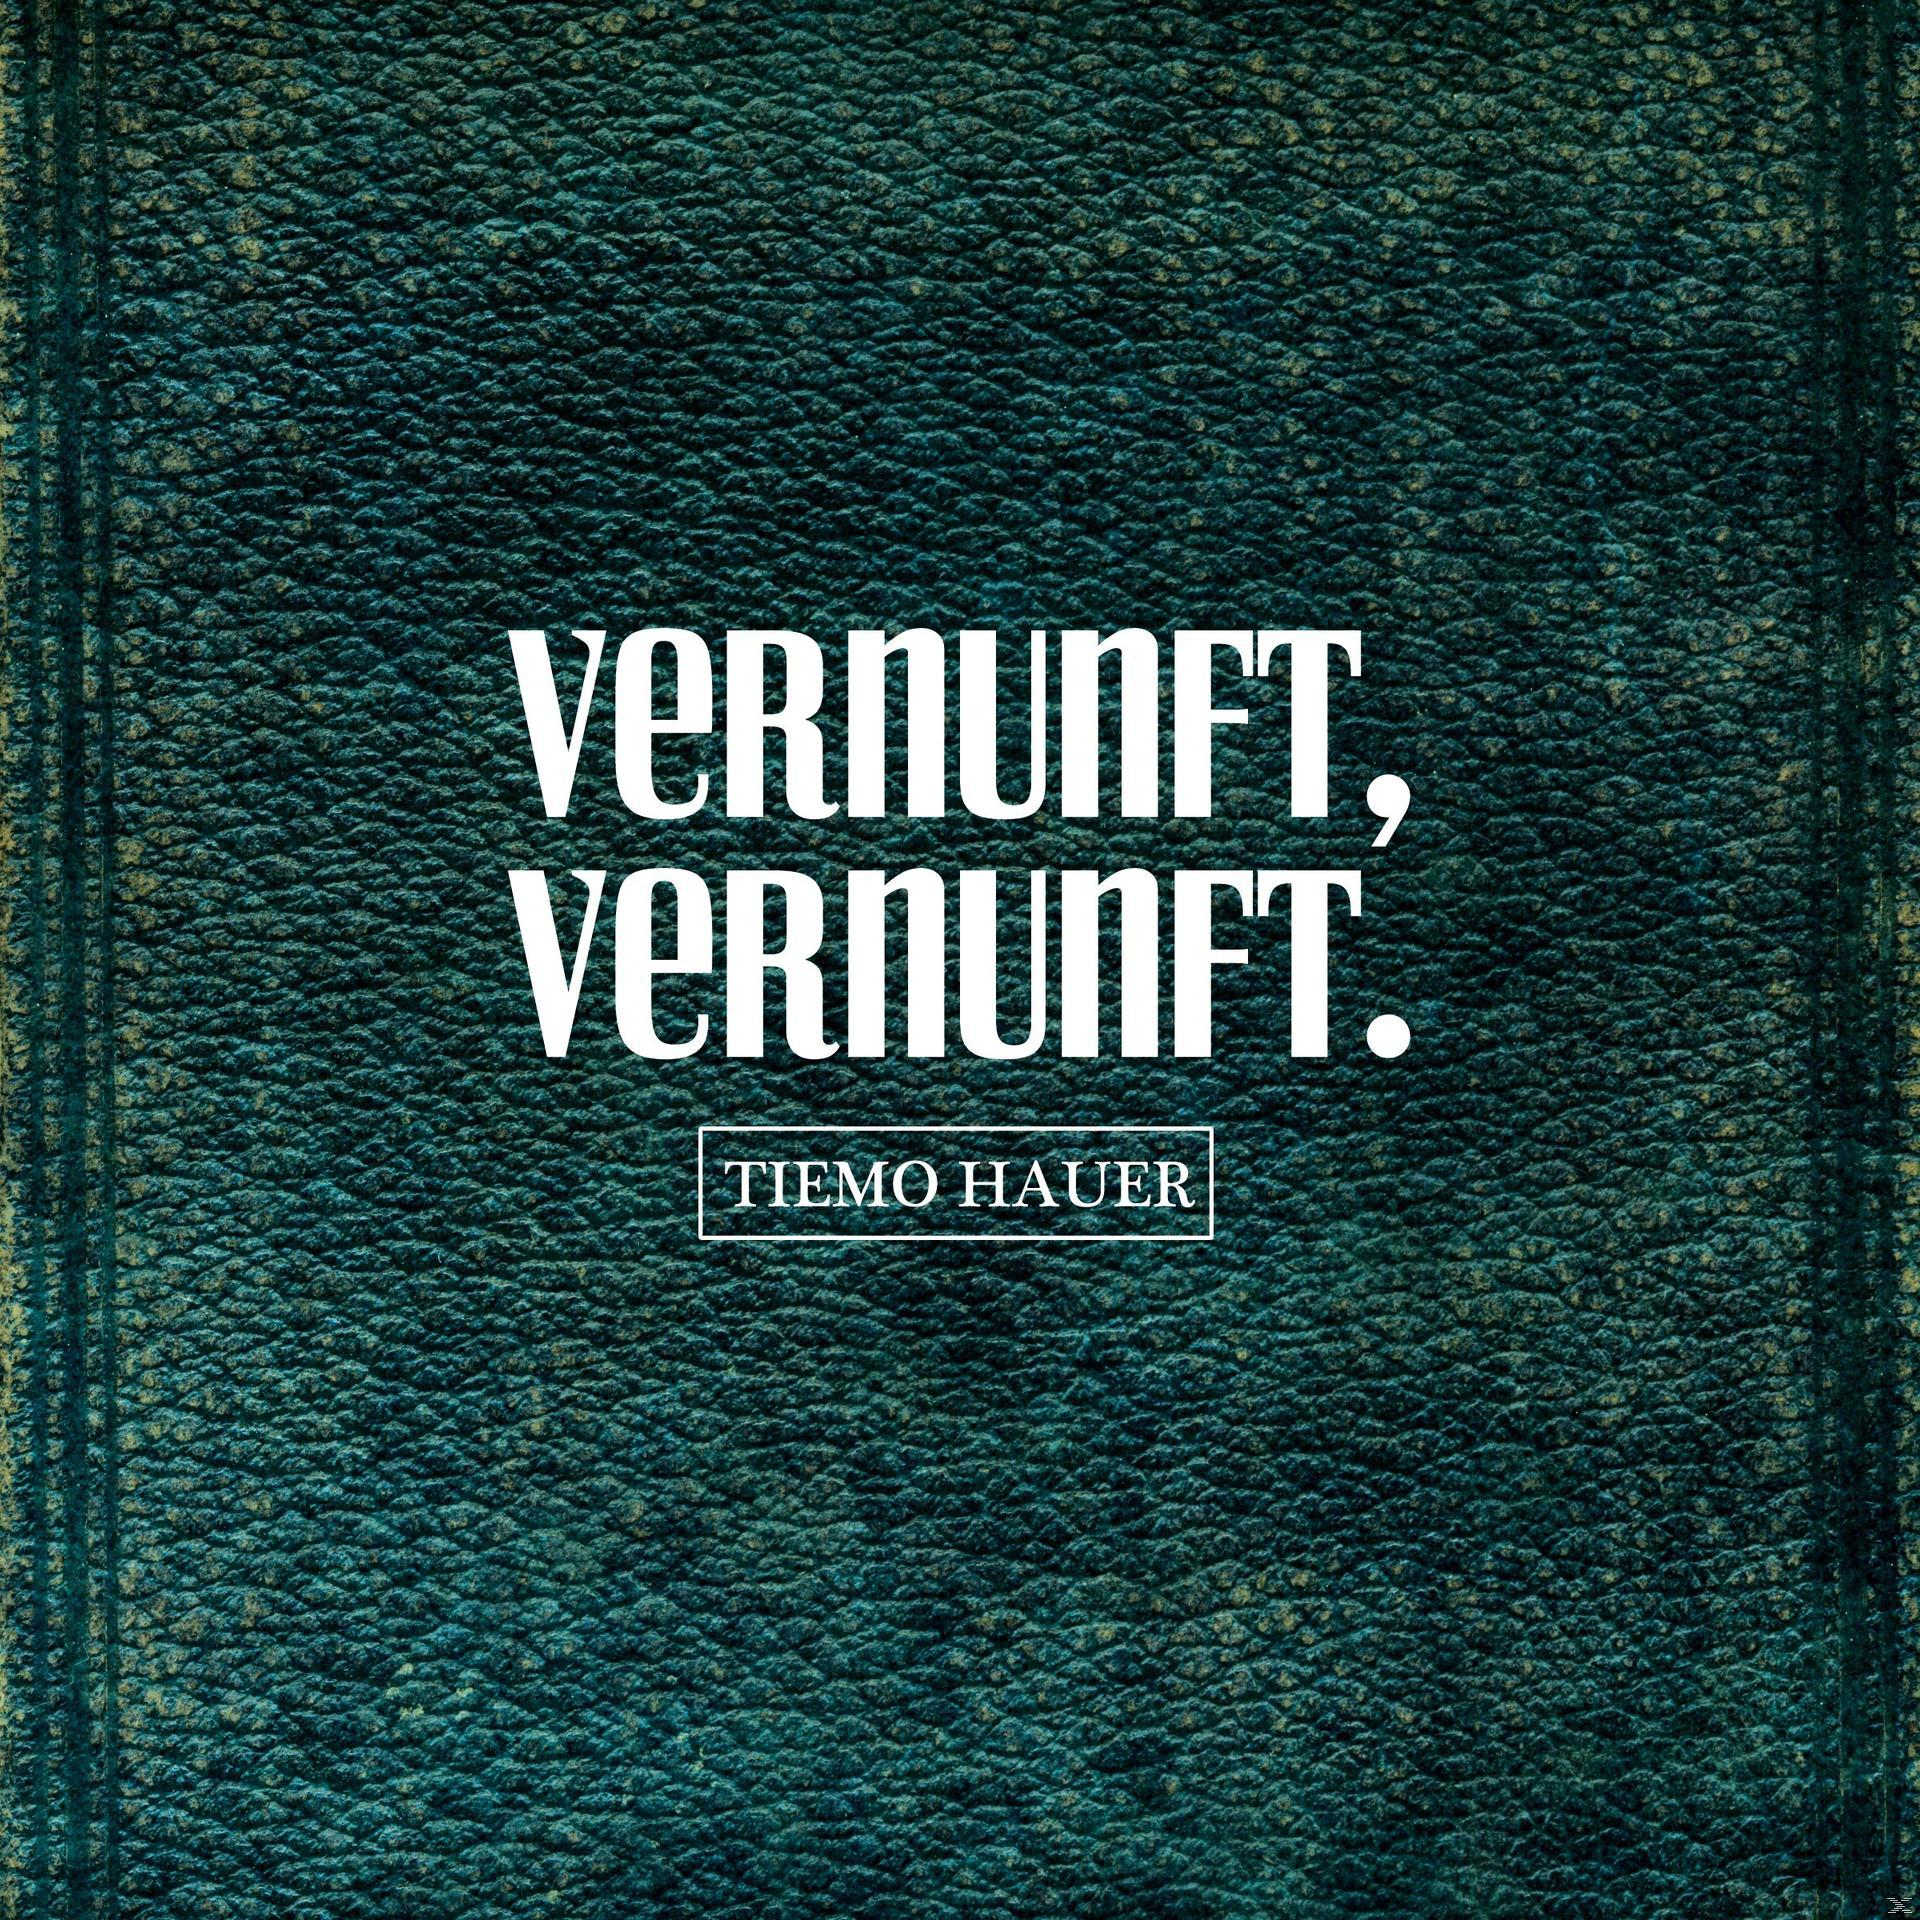 Tiemo Hauer - VERNUNFT, VERNUNFT. (Vinyl) 